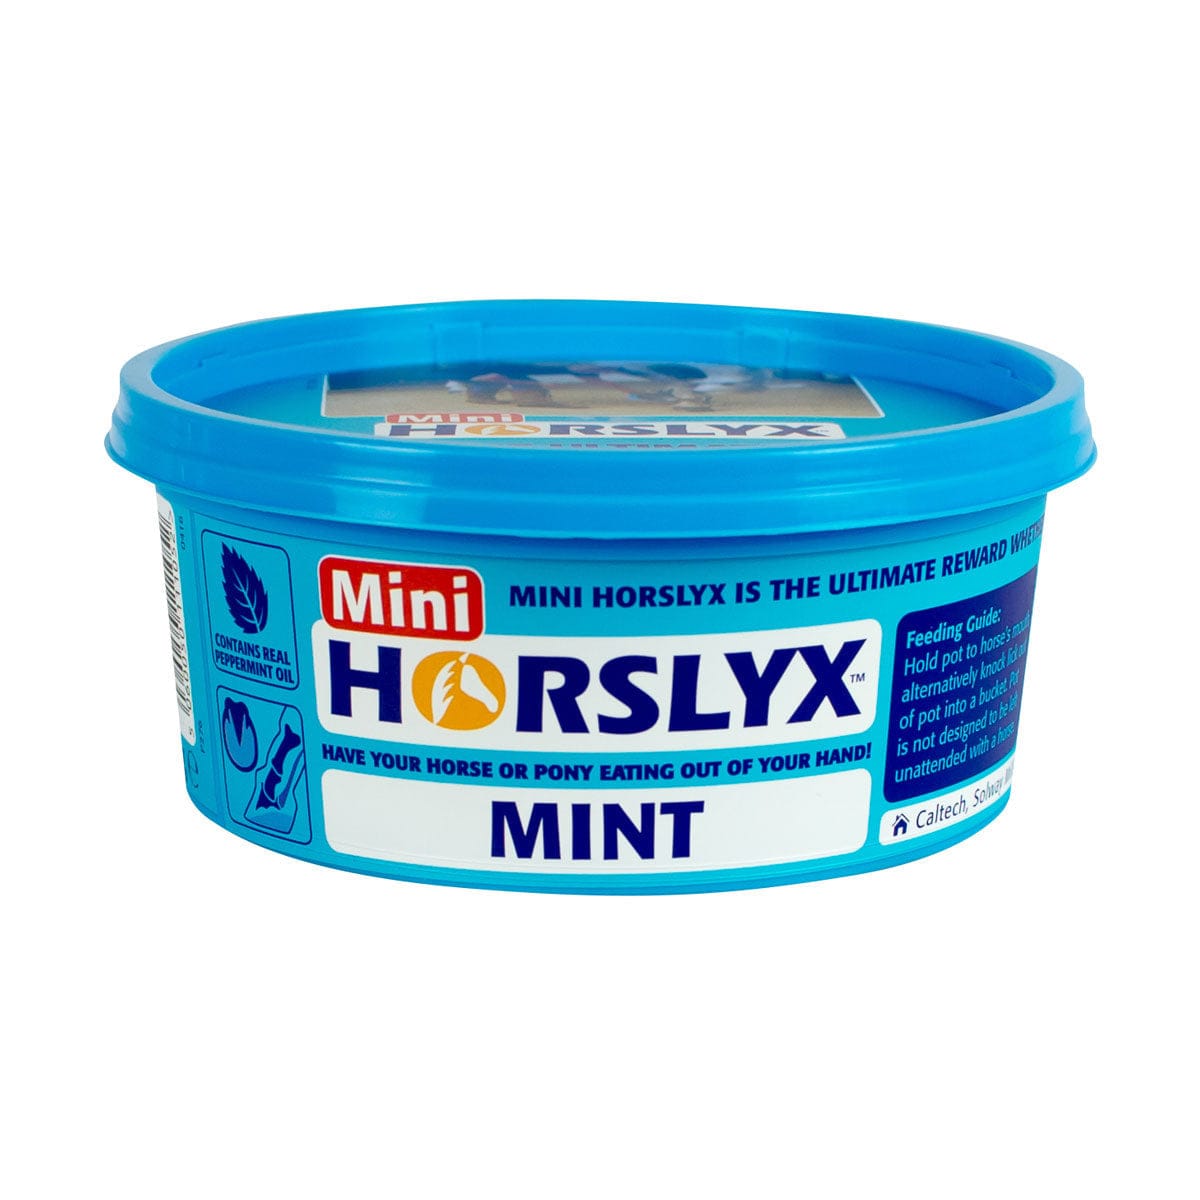 Horslyx mint